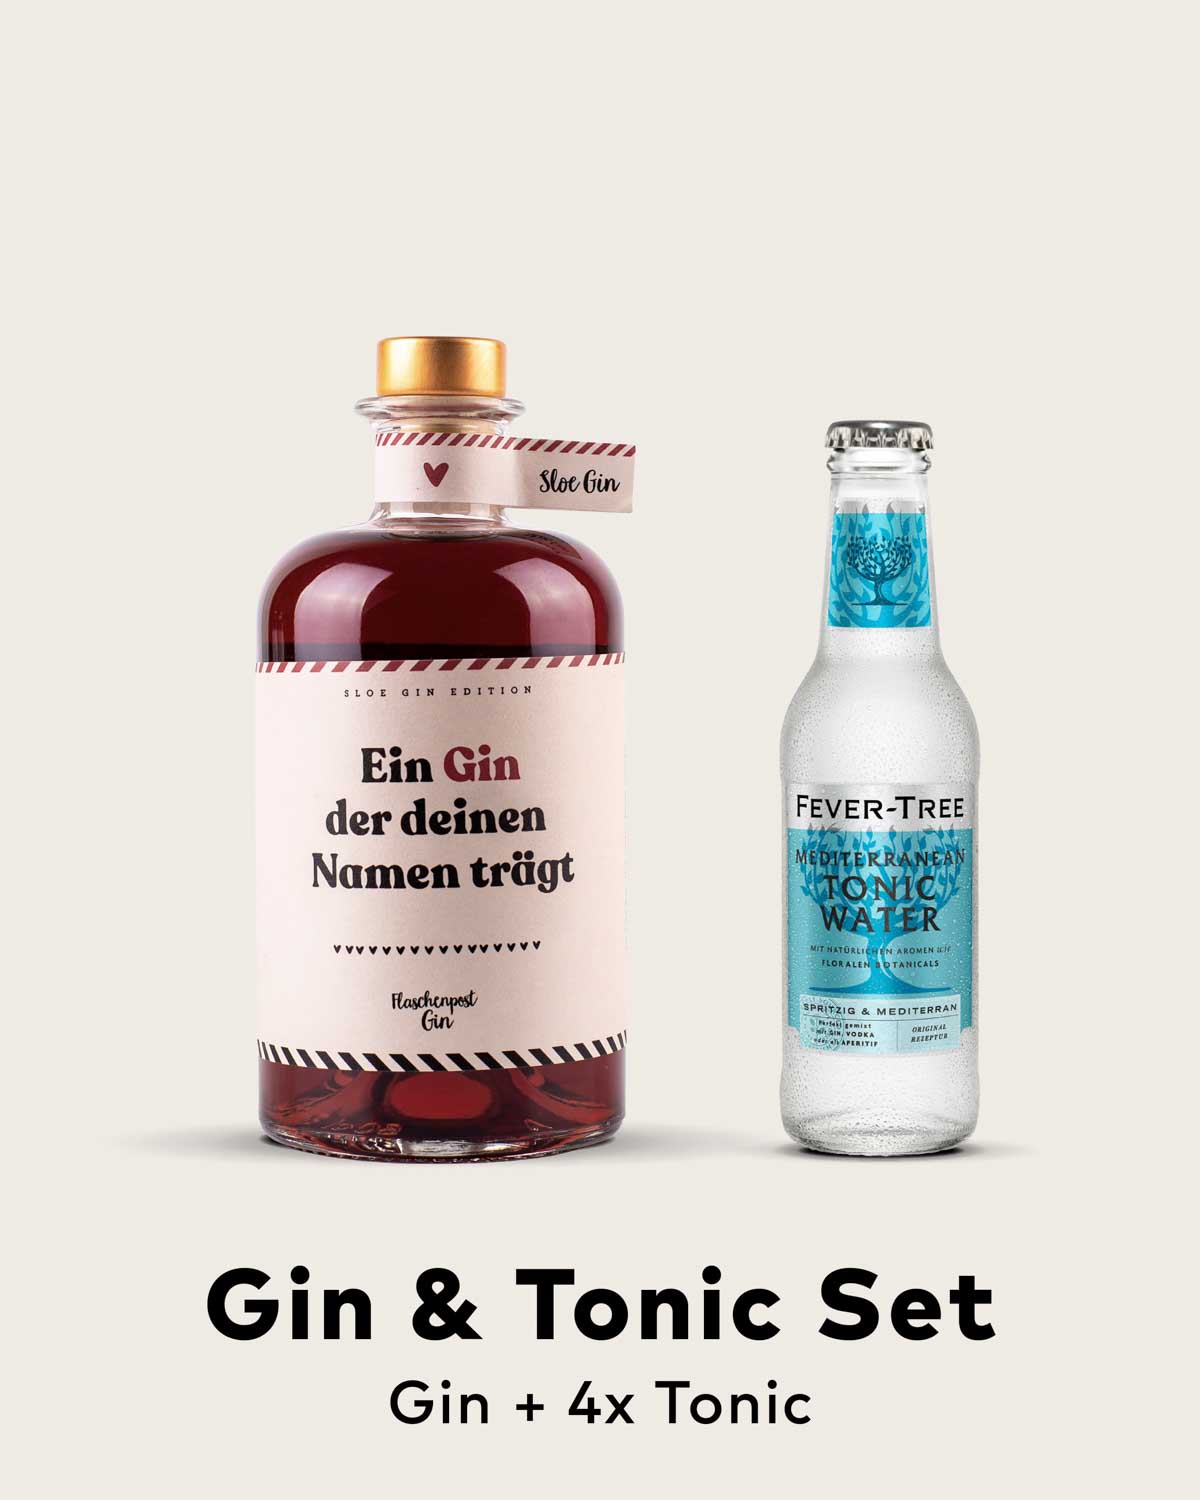 Gin & Tonic Set - Ein Gin der deinen Namen trägt by Flaschenpost Gin - Sloe Gin Edition